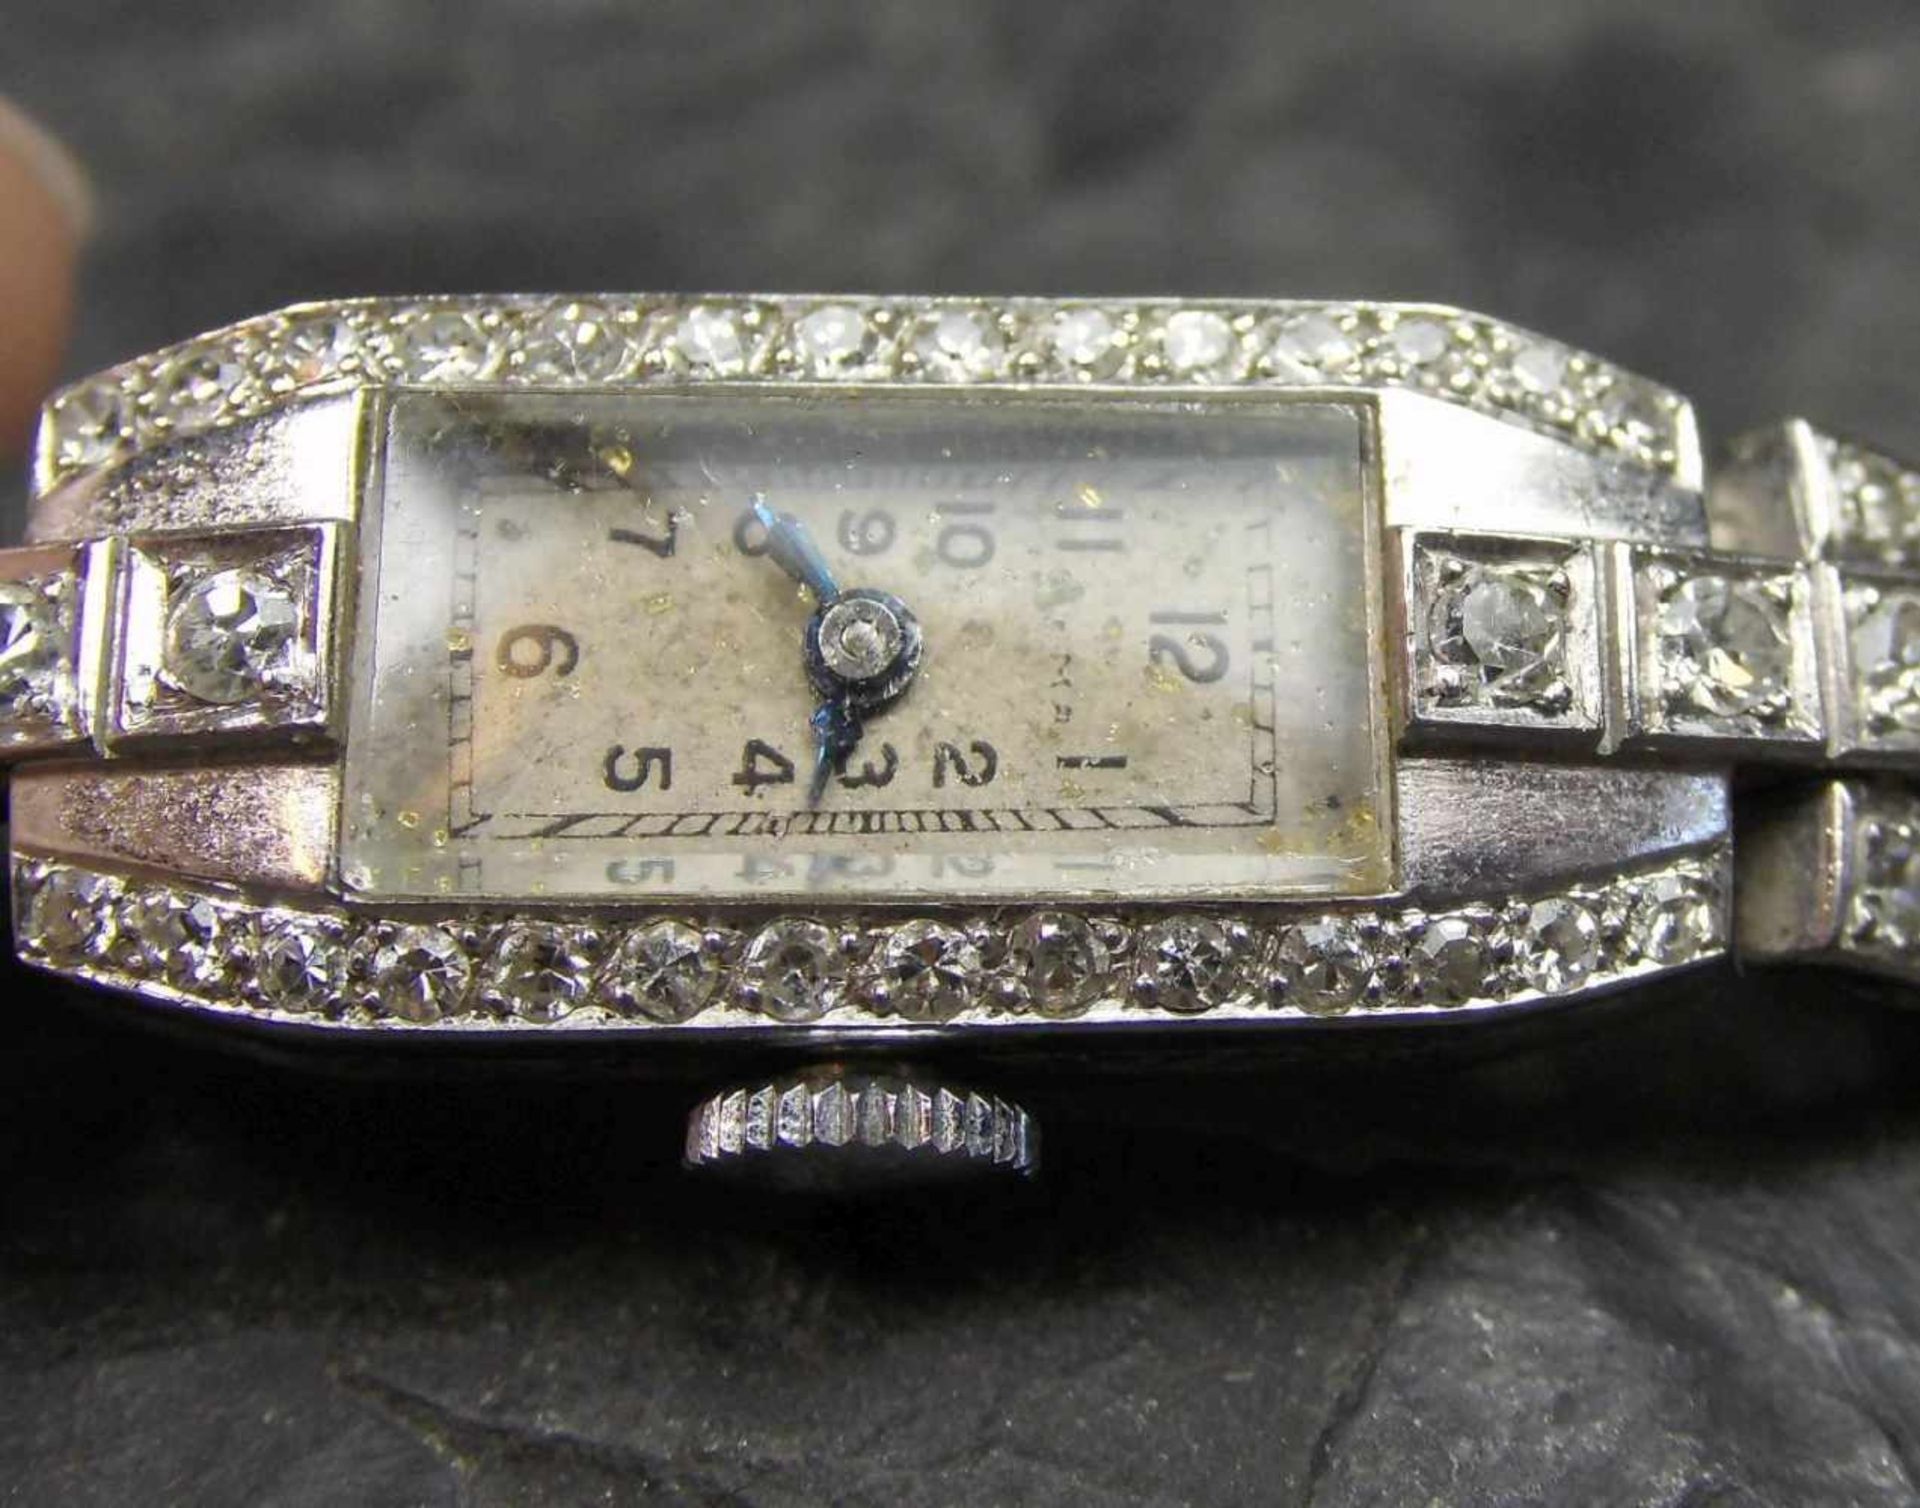 ART DÉCO - ARMBANDUHR / wristwatch, Platingehäuse, besetzt mit einer Vielzahl an Diamanten. - Image 3 of 5